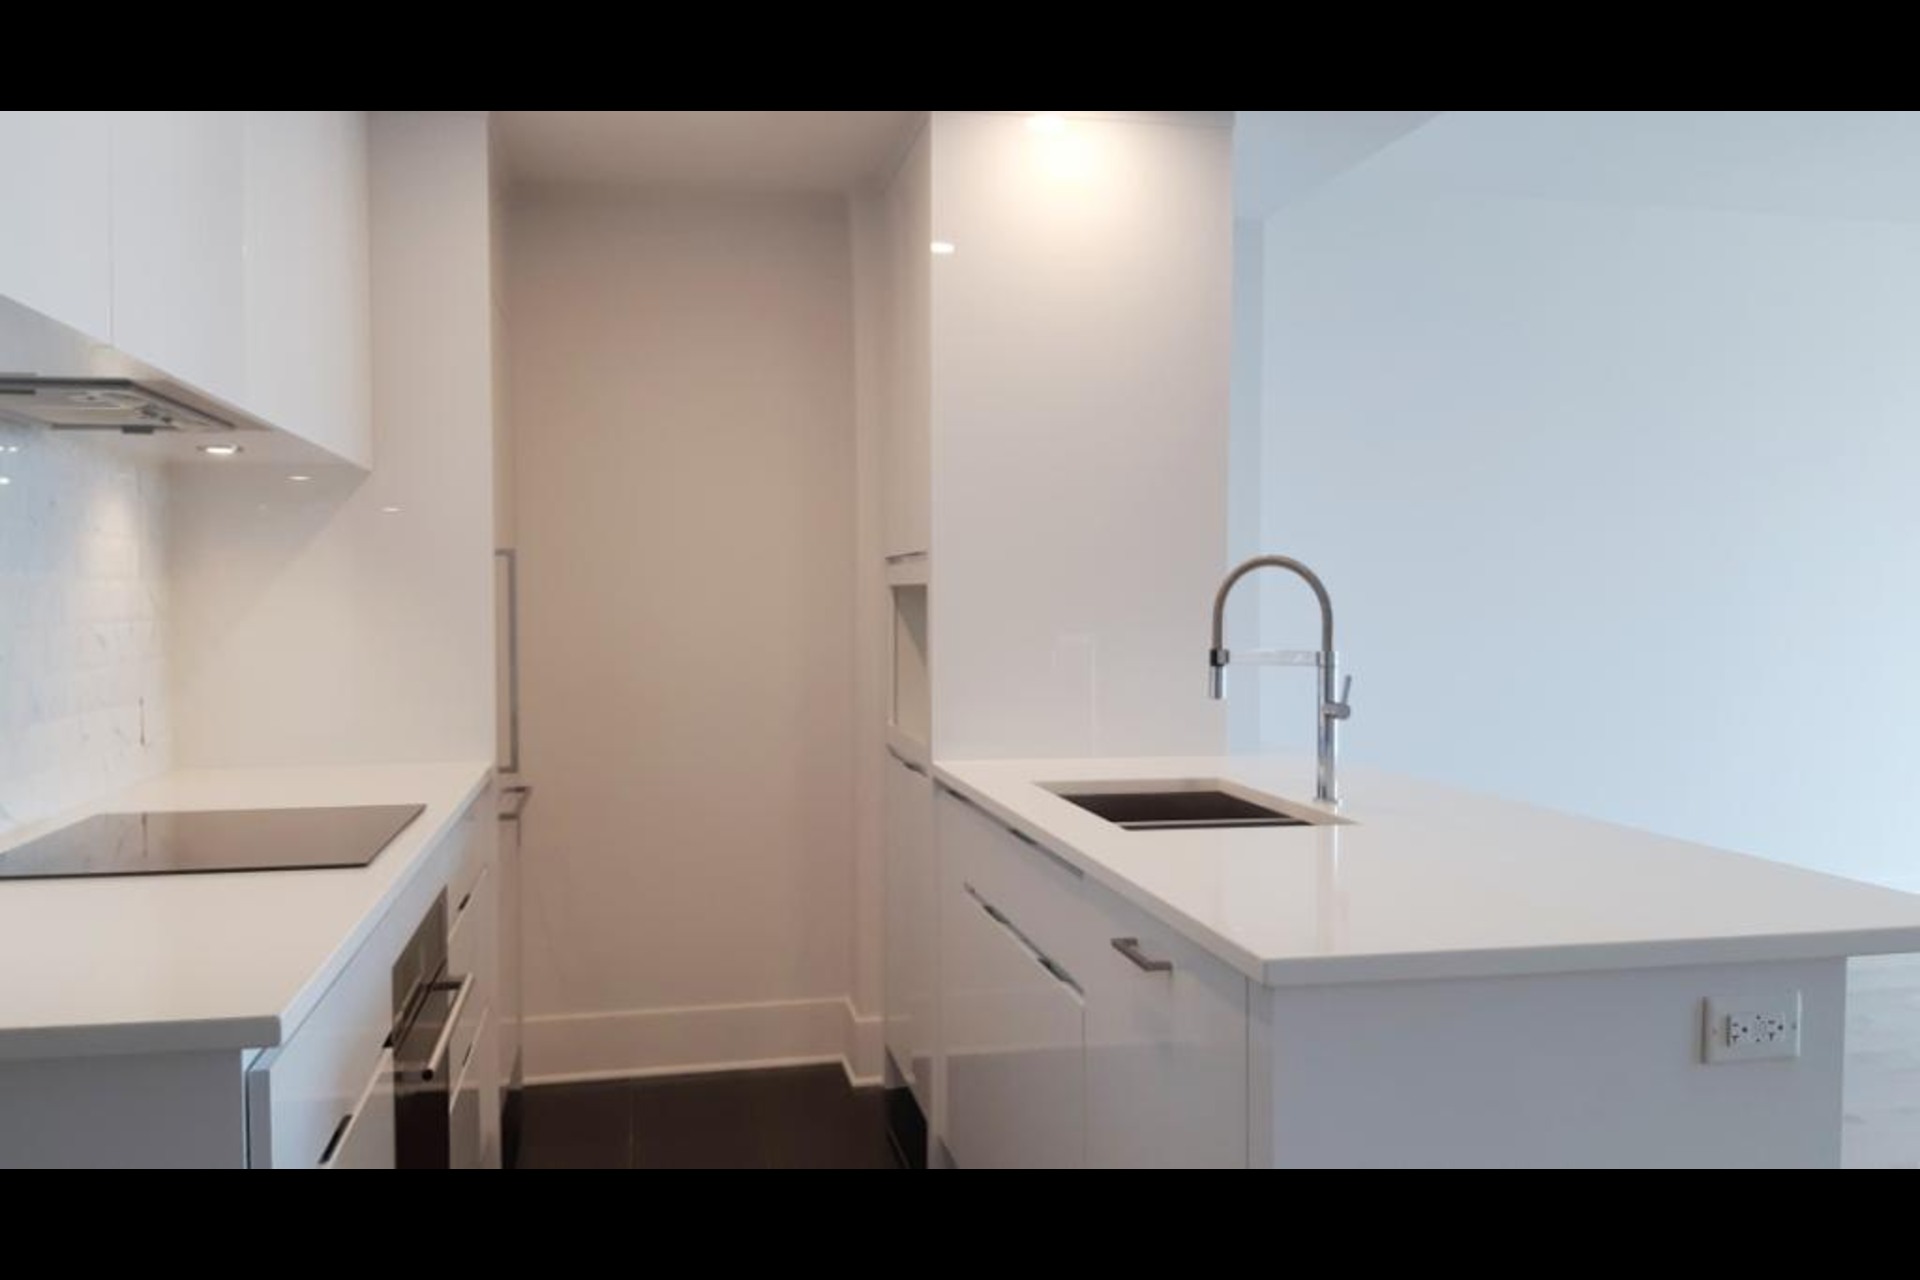 image 1 - MX - Condominio vertical - MX Para alquiler Montréal - 3 habitaciones